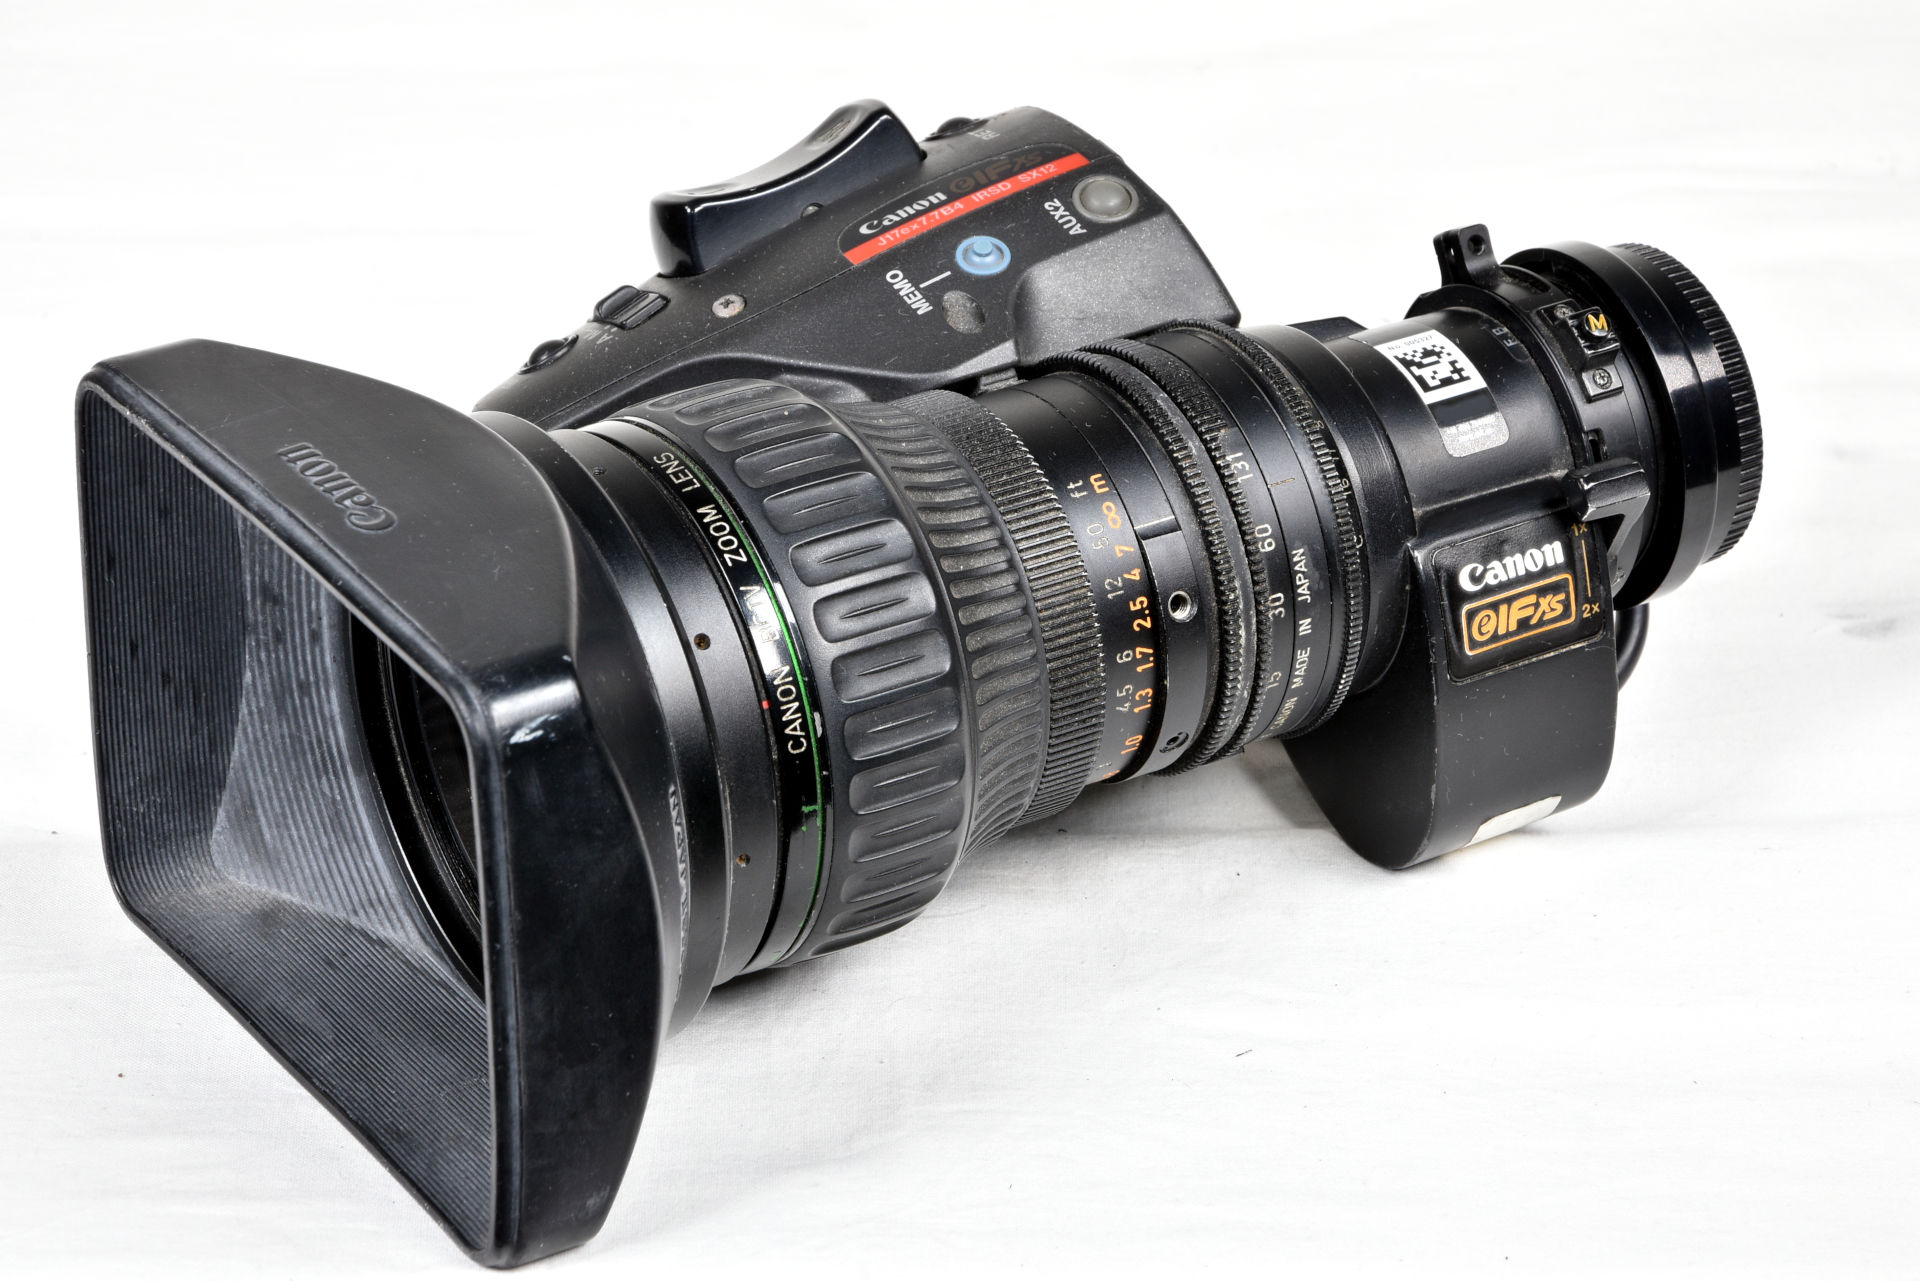 高価買蔵Canon IFxs DD J17ax7.7B4 WRSD II SX12 キャノン 業務用レンズ #2951 プロ用、業務用